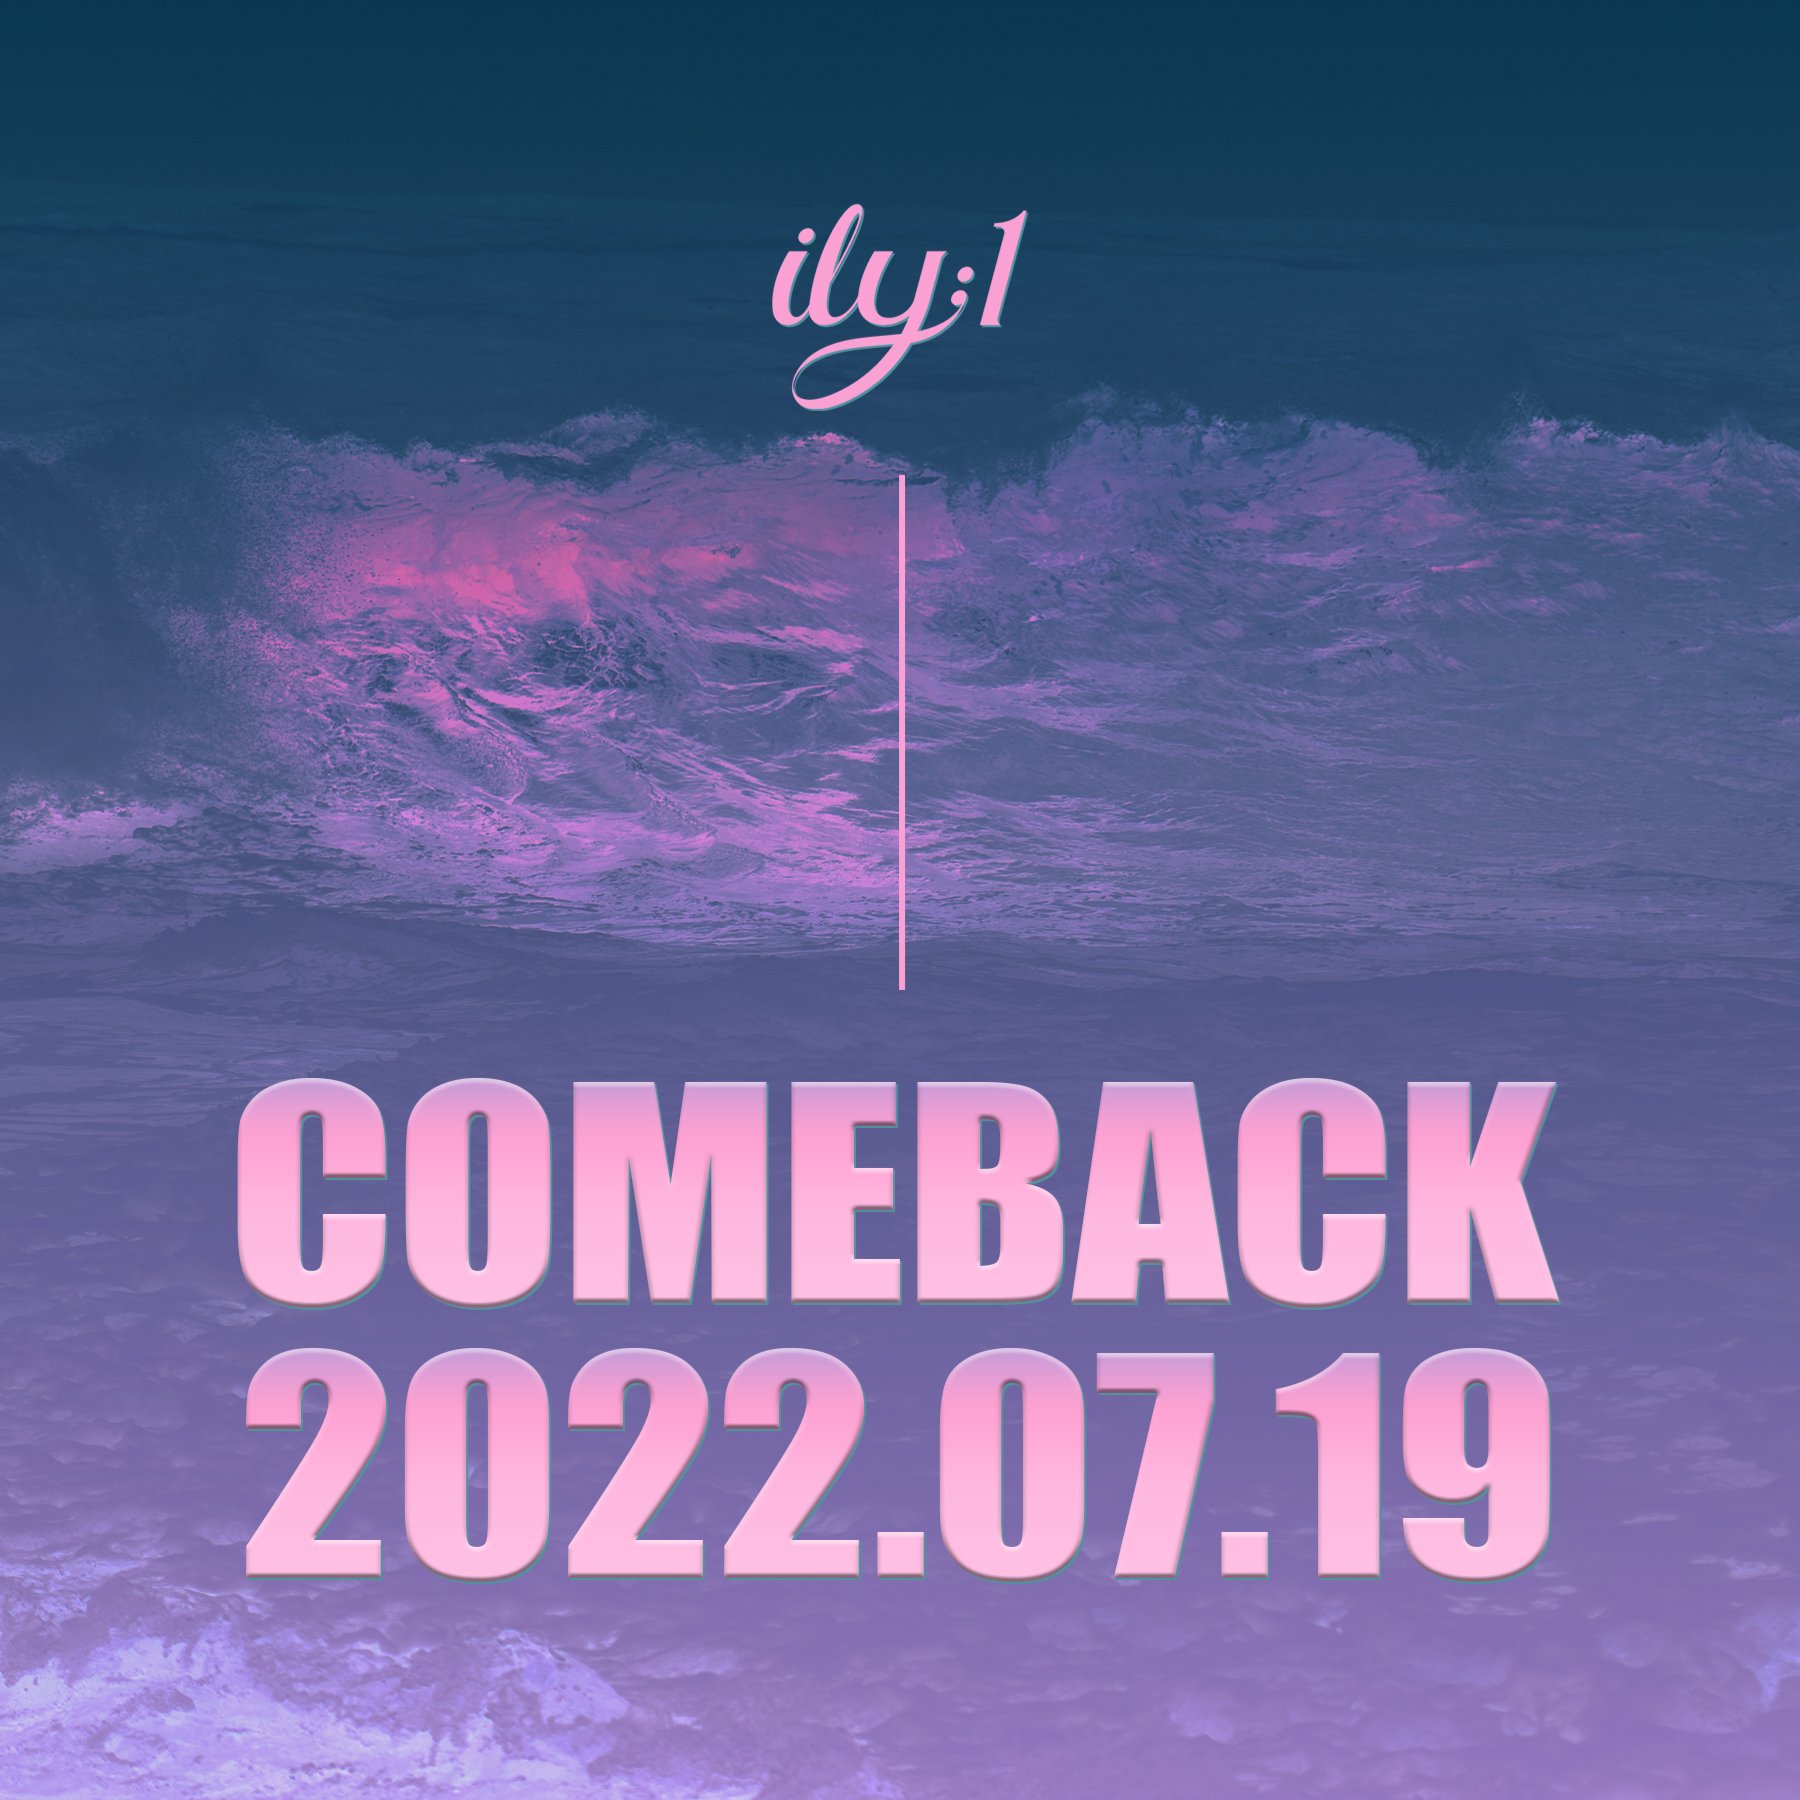 ily:1 comeback 1